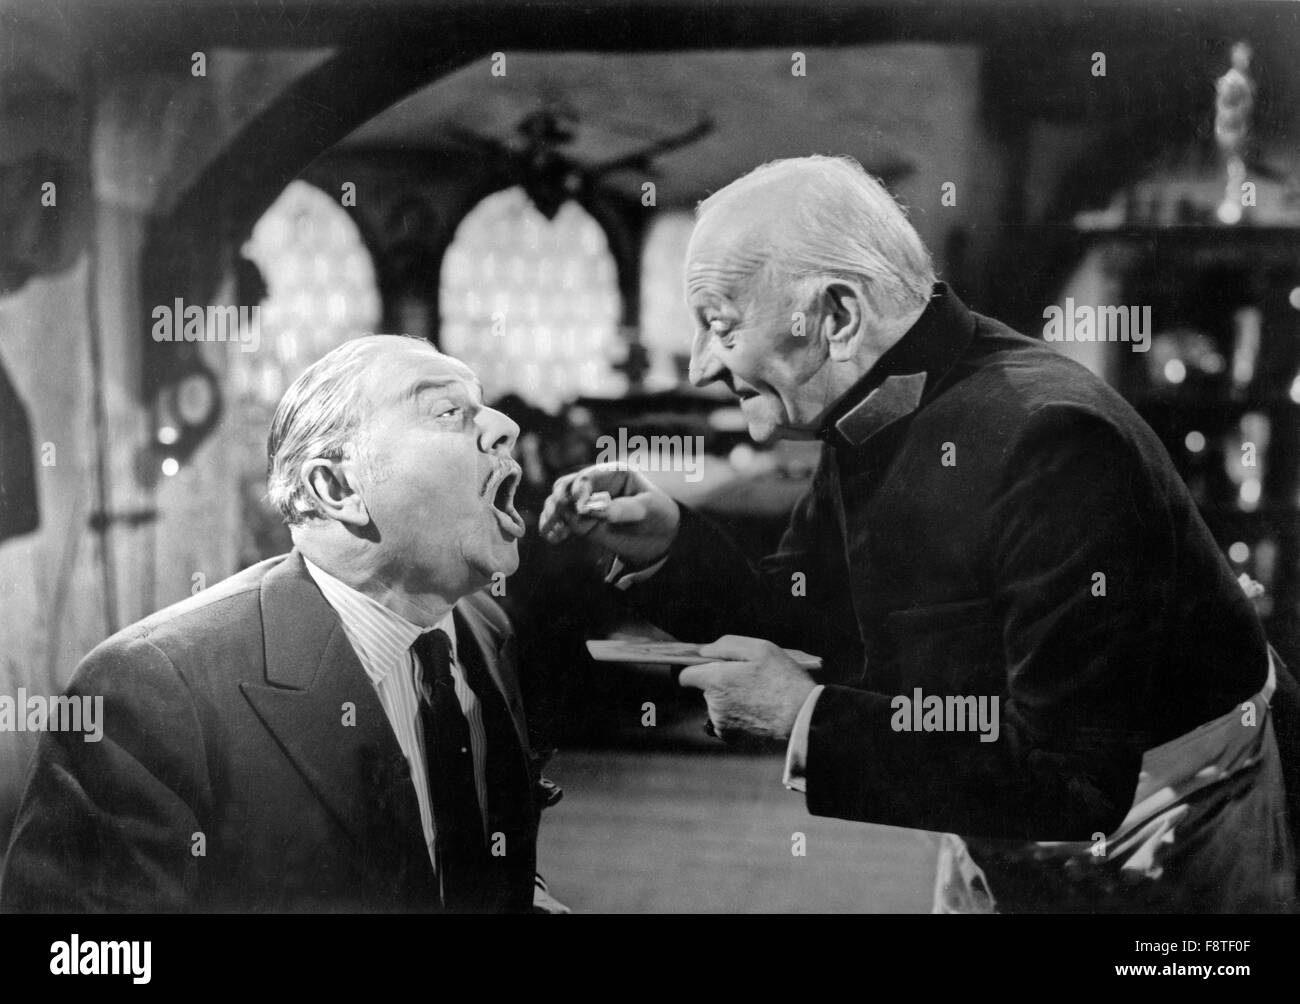 Fritz und Friederike, Deutschland 1952, Regie: Geza von Bolvary, Darsteller: Hans Leibelt (?, link), Otto Gebühr Foto Stock